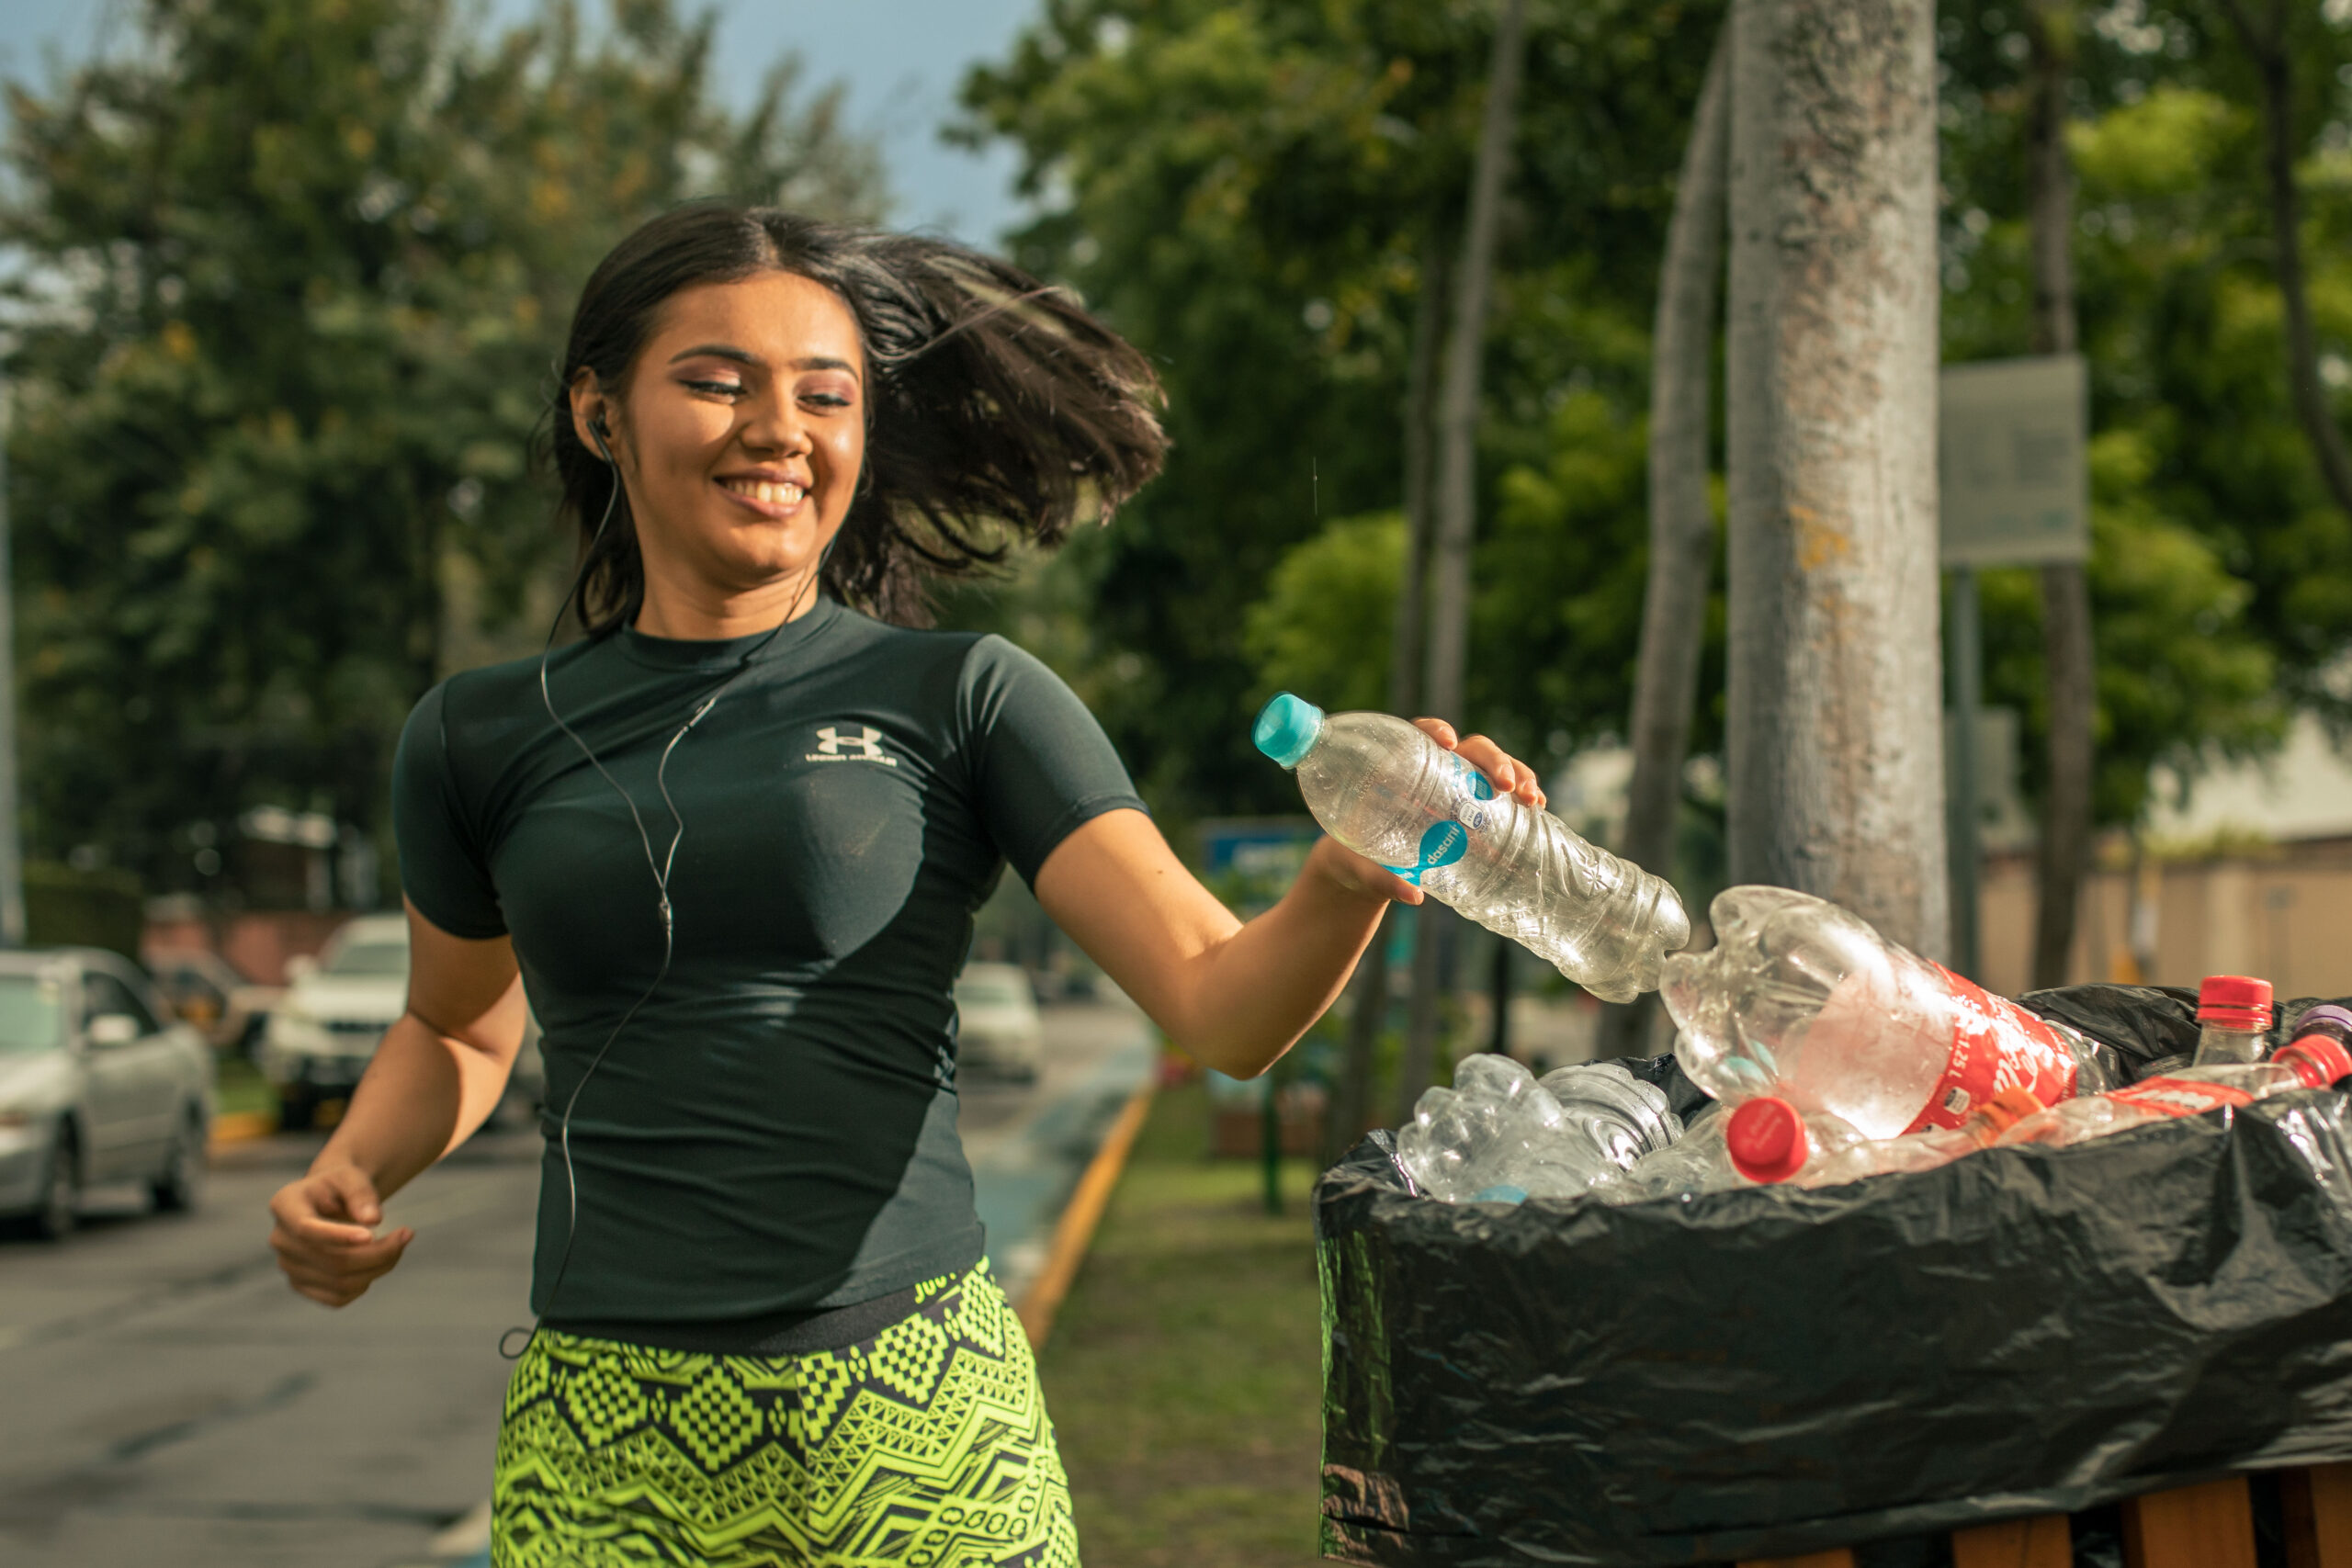 Chica depositando una botella plástica en un contenedor